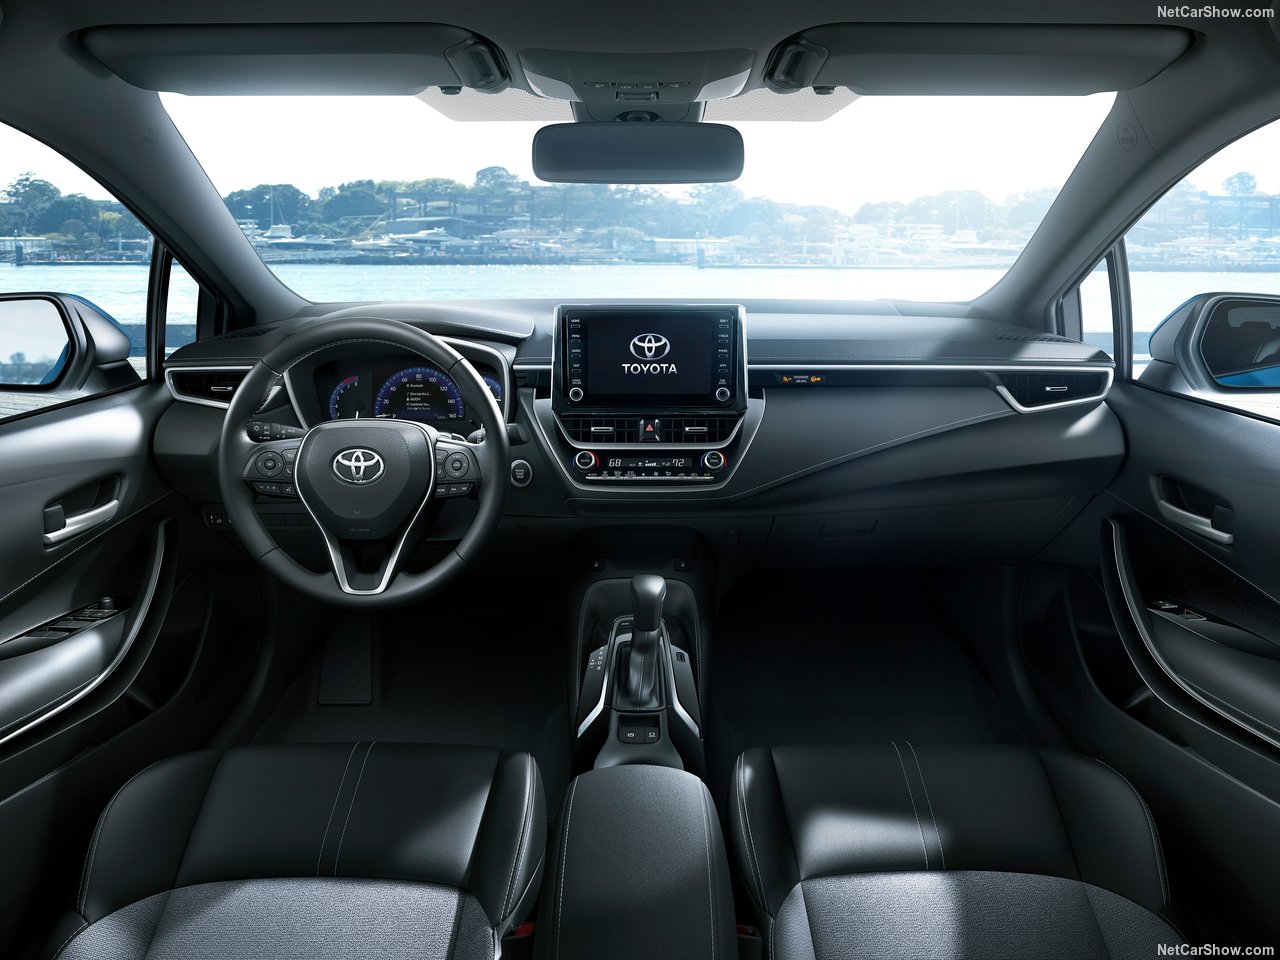 2019 Toyota Corolla Hatchback bomba gibi geliyor! Toyota Corolla Hatchback’in özellikleri neler?